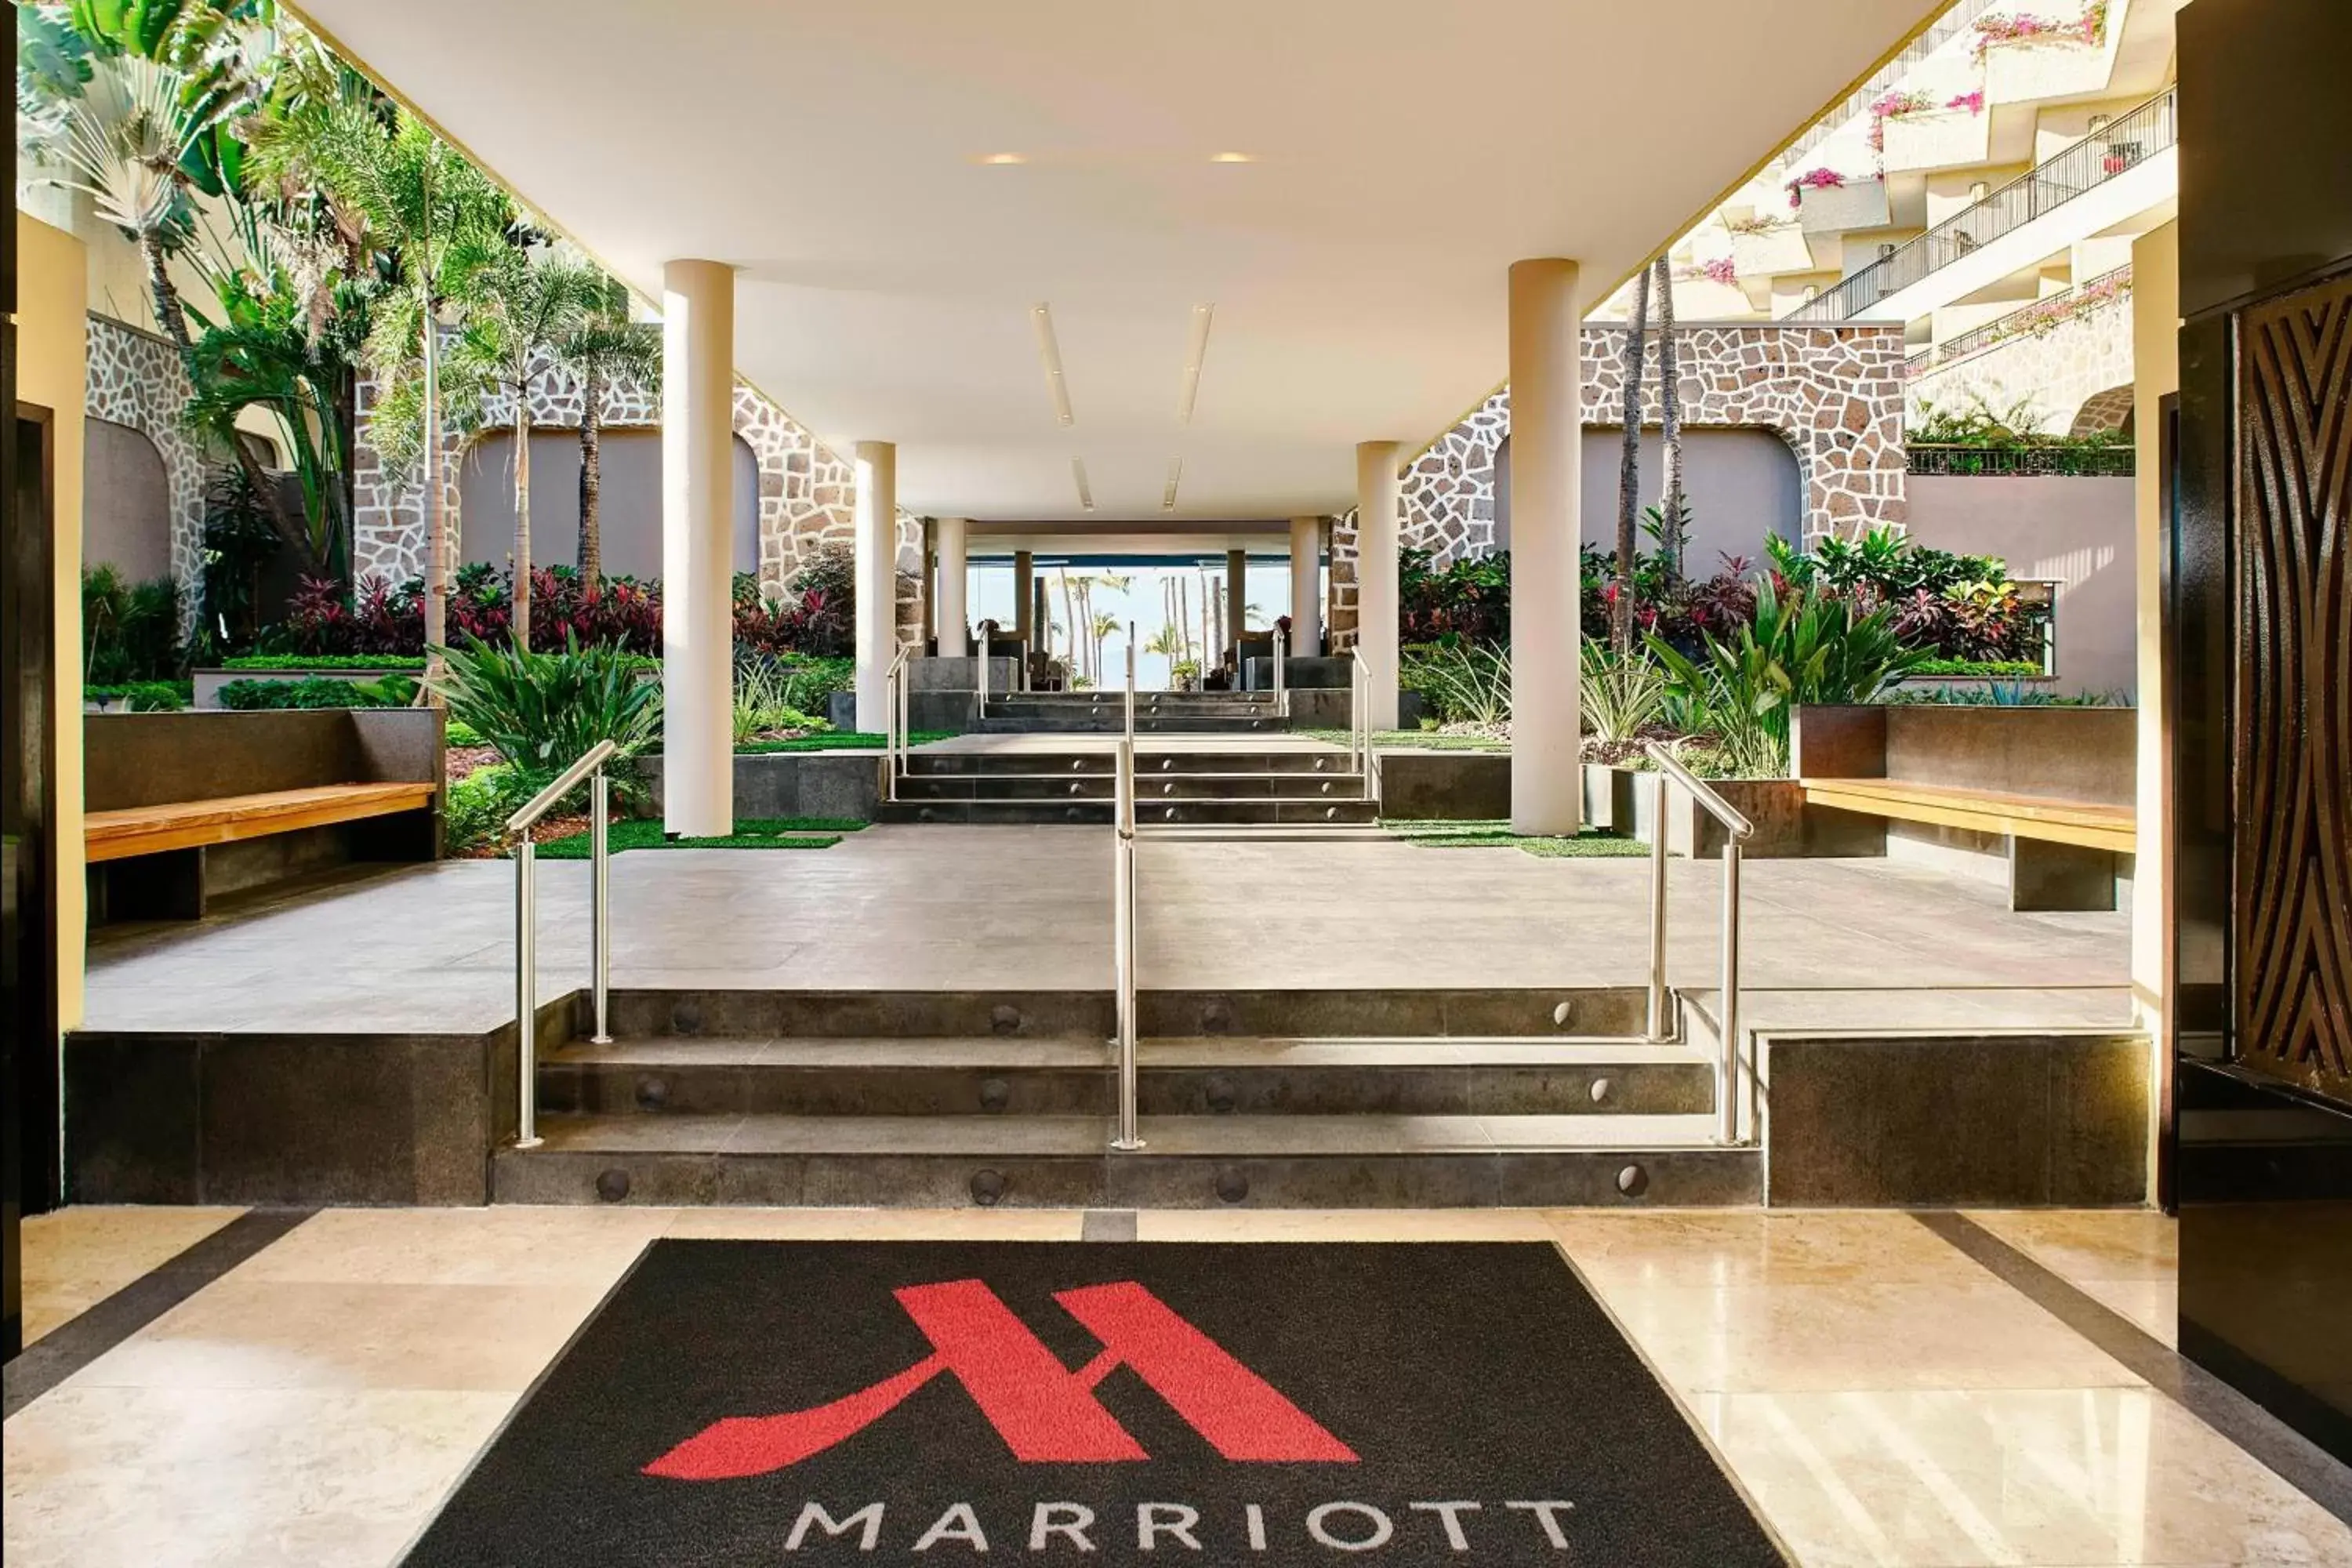 Property building in Marriott Puerto Vallarta Resort & Spa